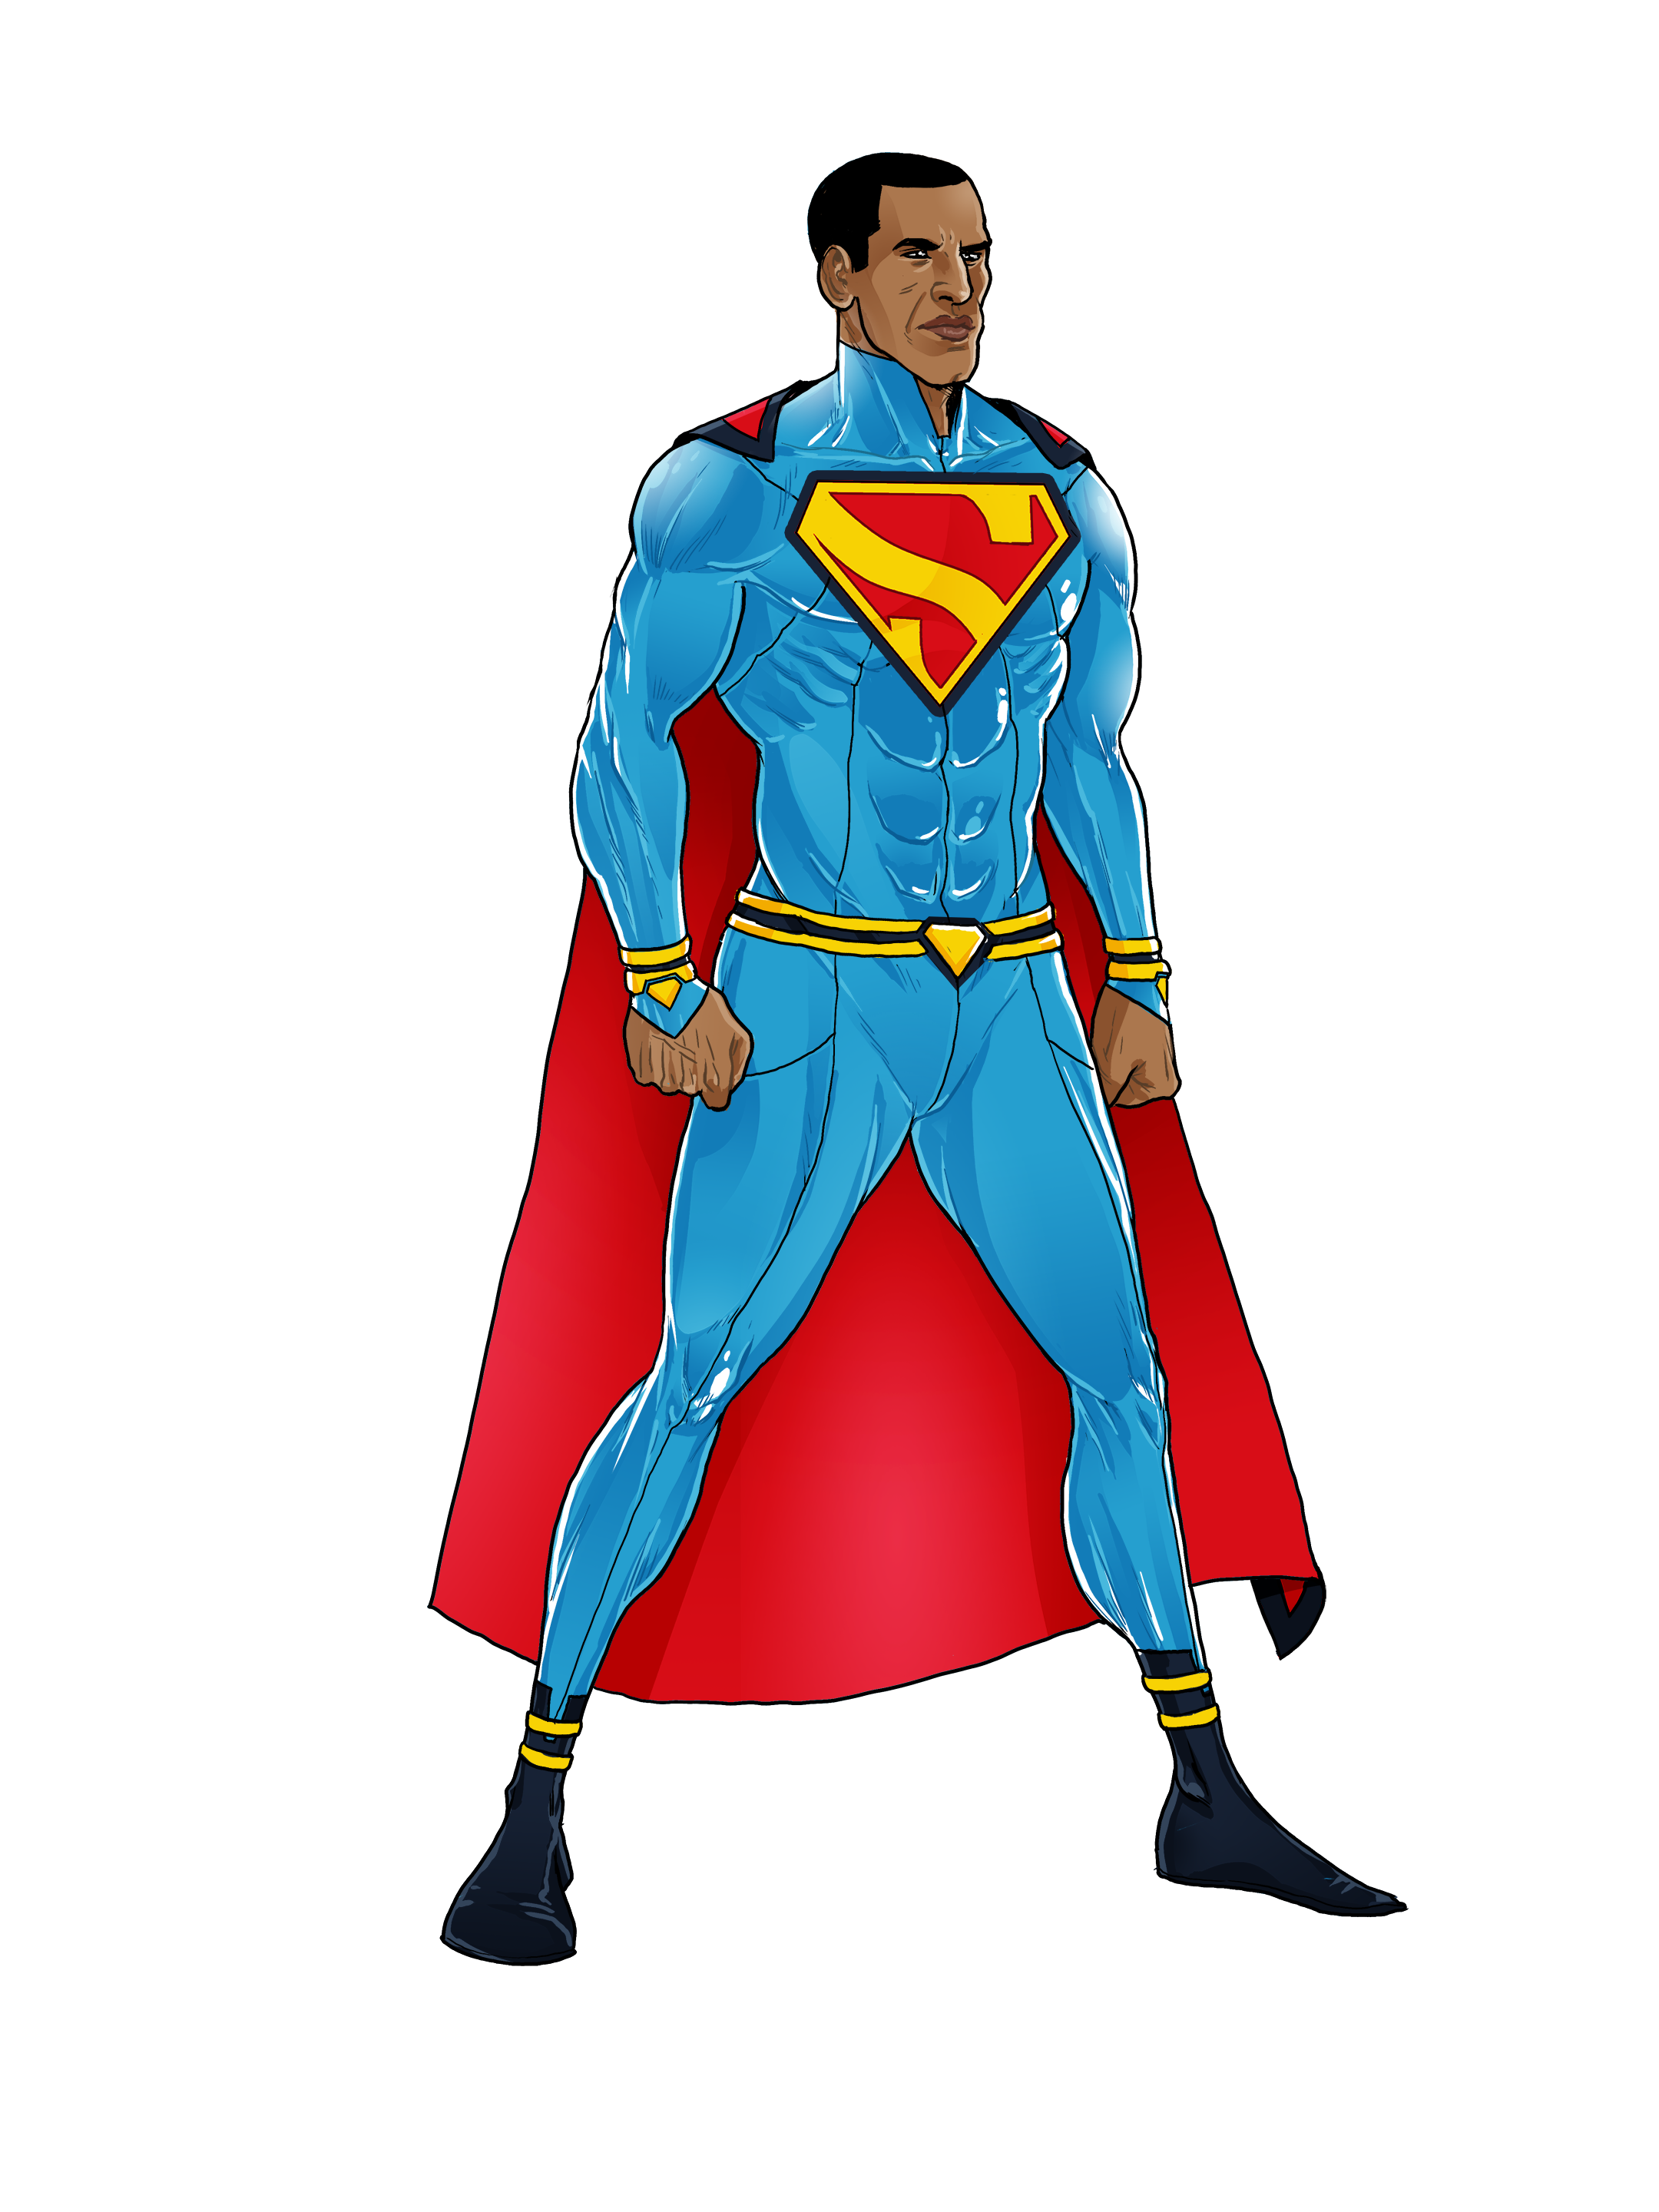 superheroes clipart action figure